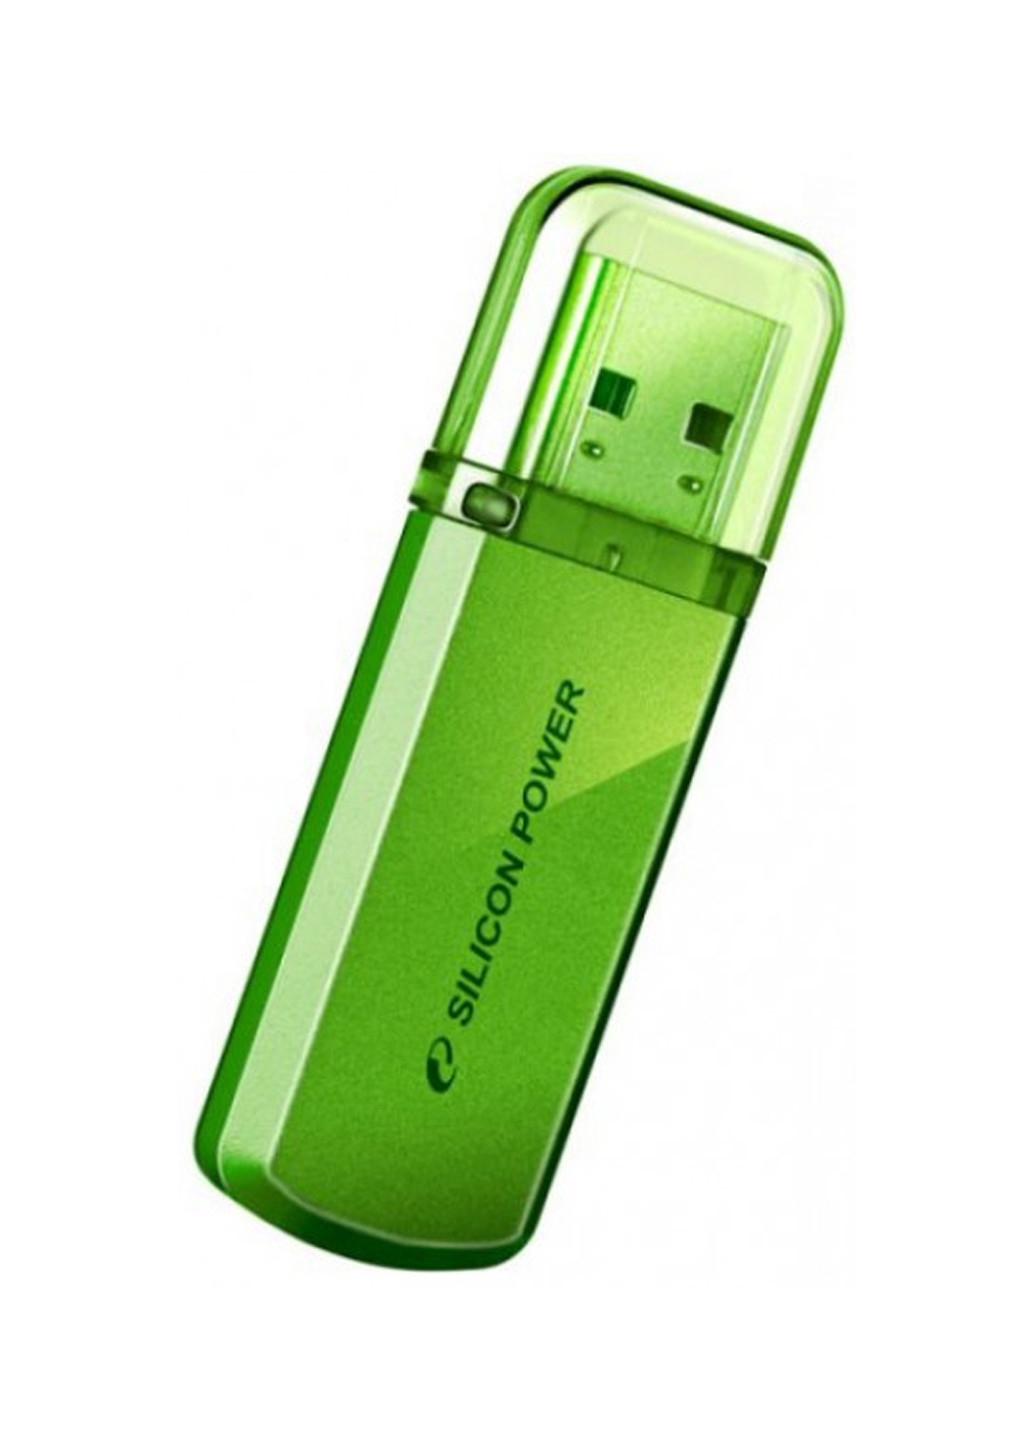 Флеш пам'ять USB Helios 101 16GB Green (SP016GBUF2101V1N) Silicon Power флеш память usb silicon power helios 101 16gb green (sp016gbuf2101v1n) (132007758)